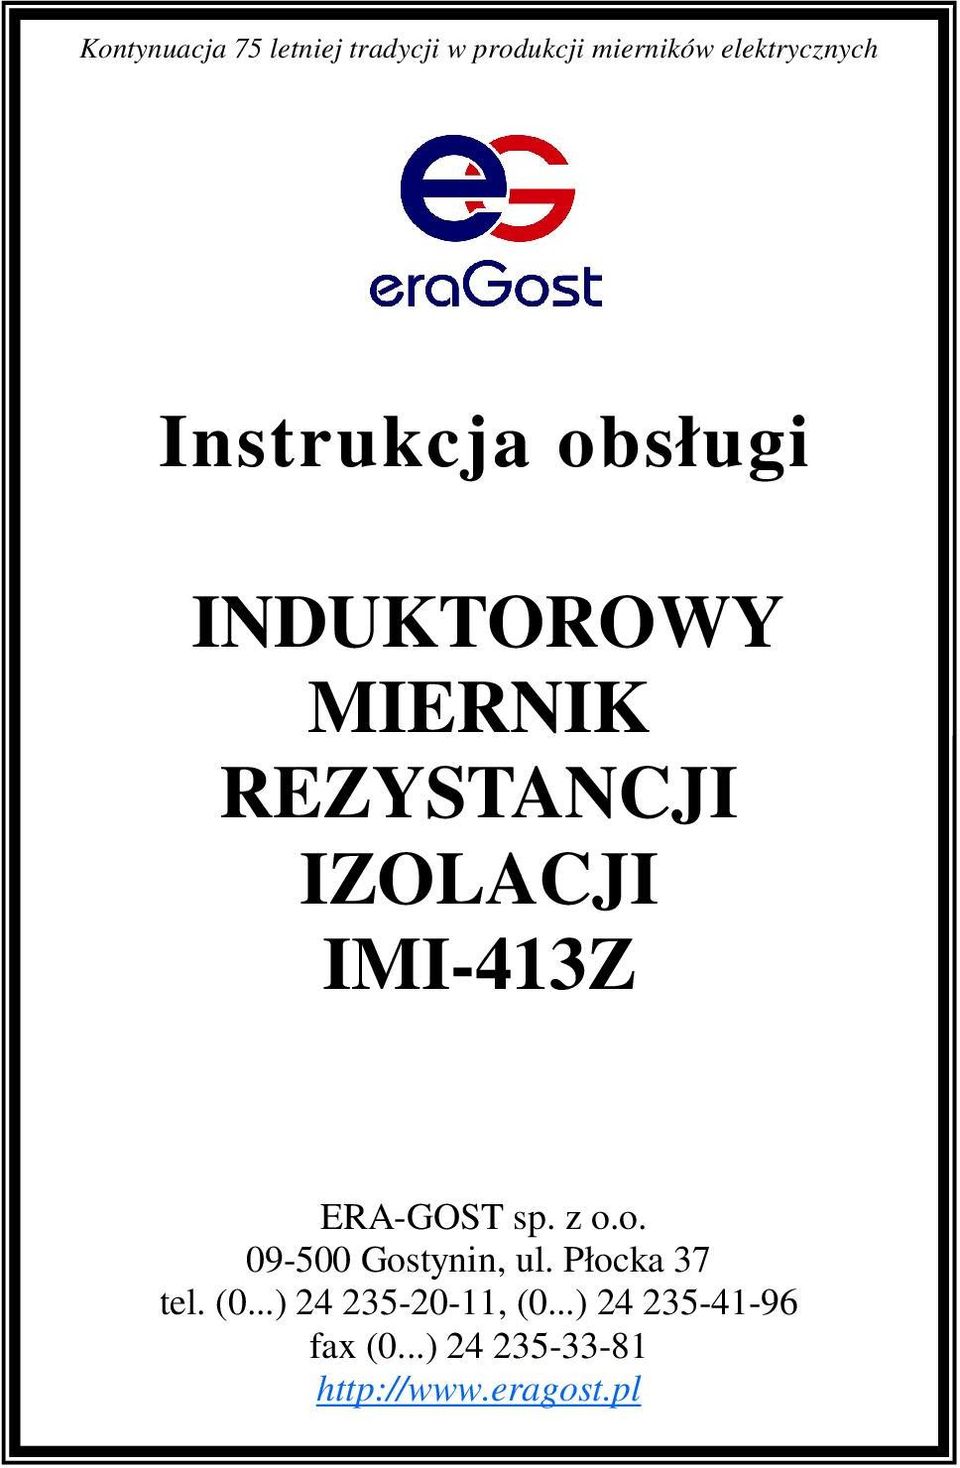 ERA-GOST sp. z o.o. 09-500 Gostynin, ul. Płocka 37 tel. (0.